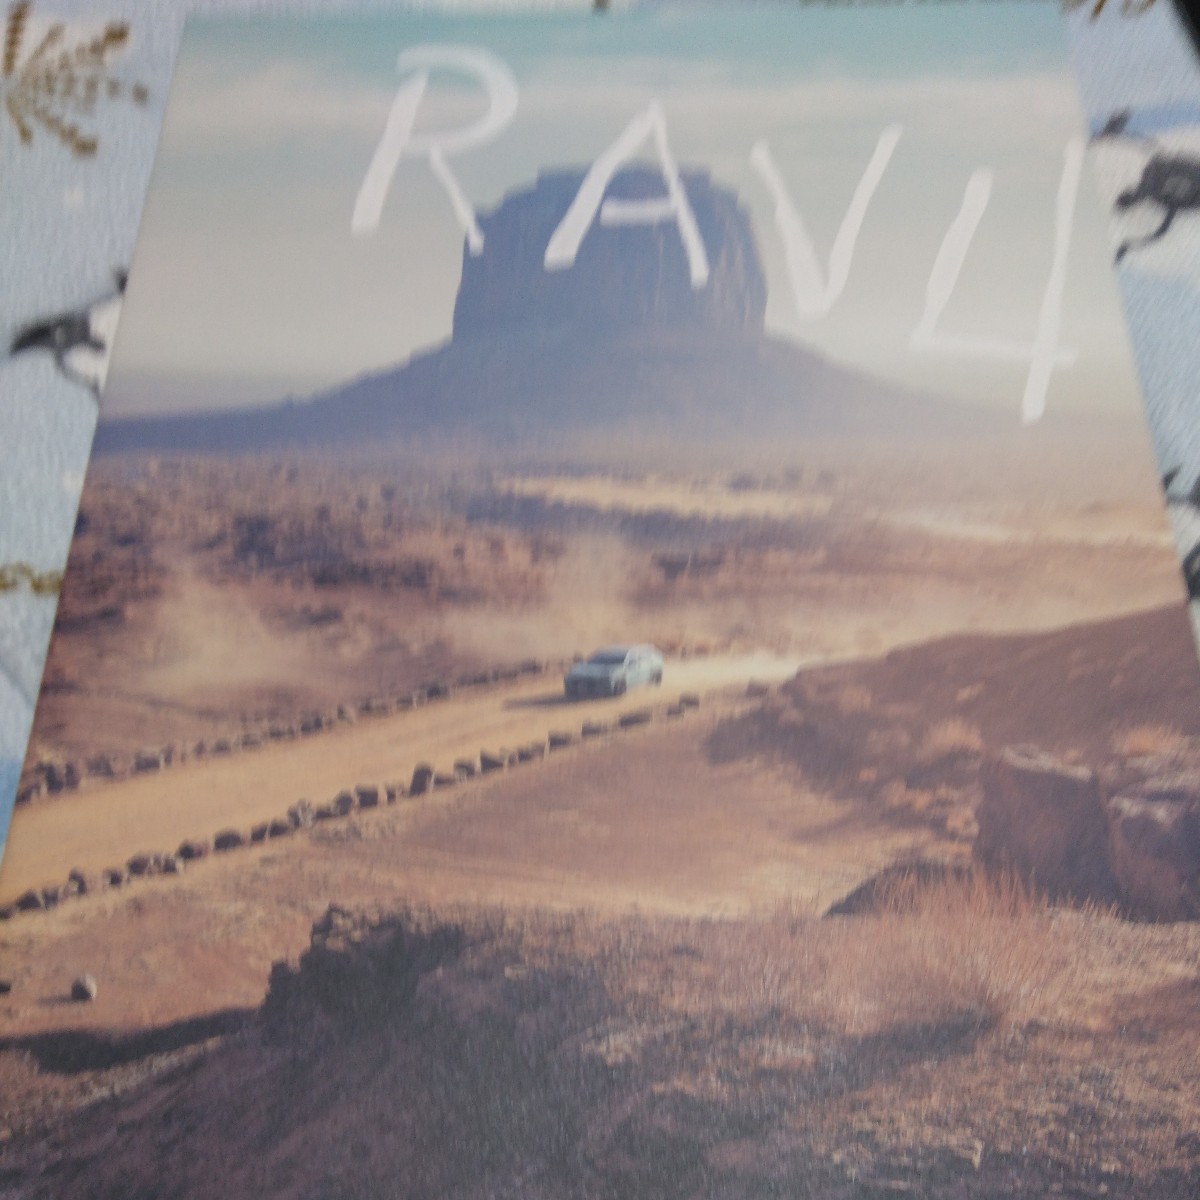 RAV4 catalog 2 pcs. set 